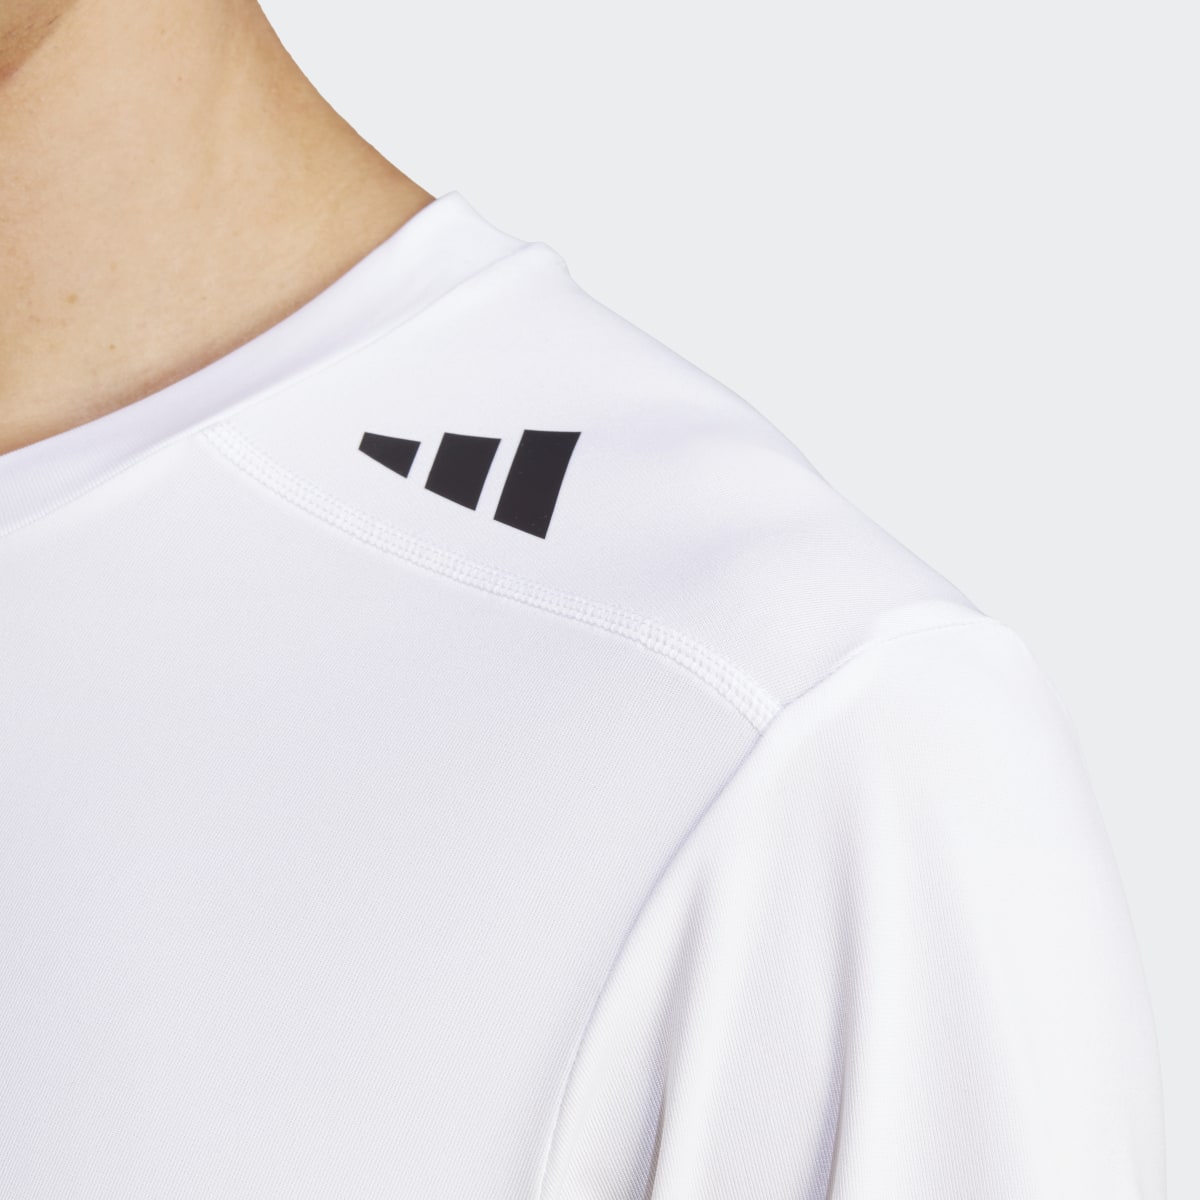 Adidas T-shirt de Running Made to be Remade. 7